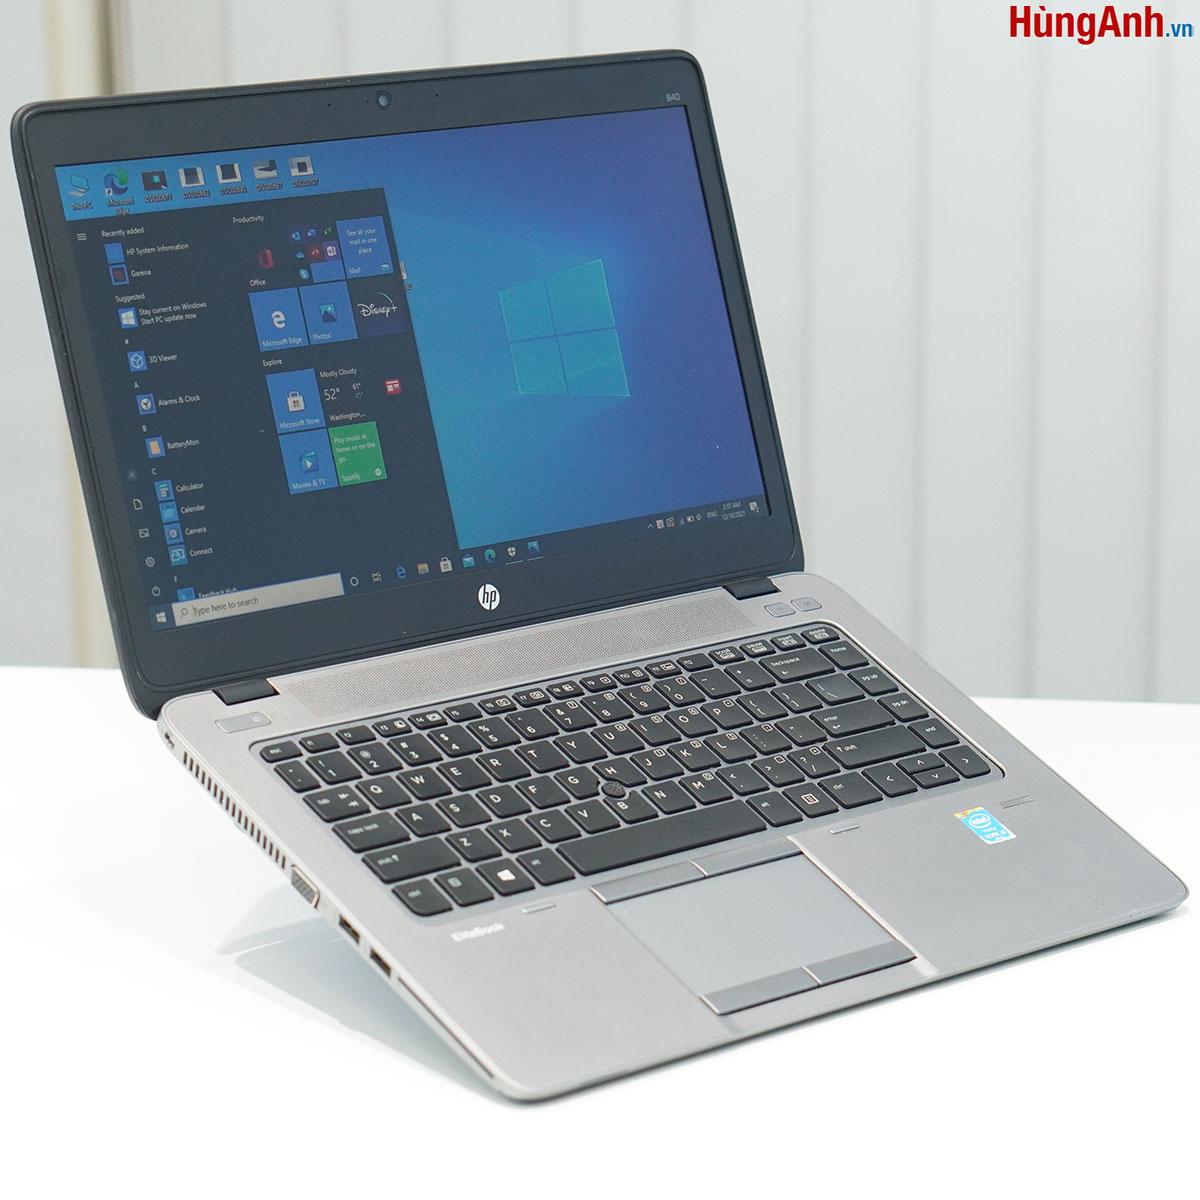 HP Elitebook 840 G2 Core i5 5200U, Ram 4GB, SSD 120 GB , 14 inch, HD 5500, AMD R7 M260